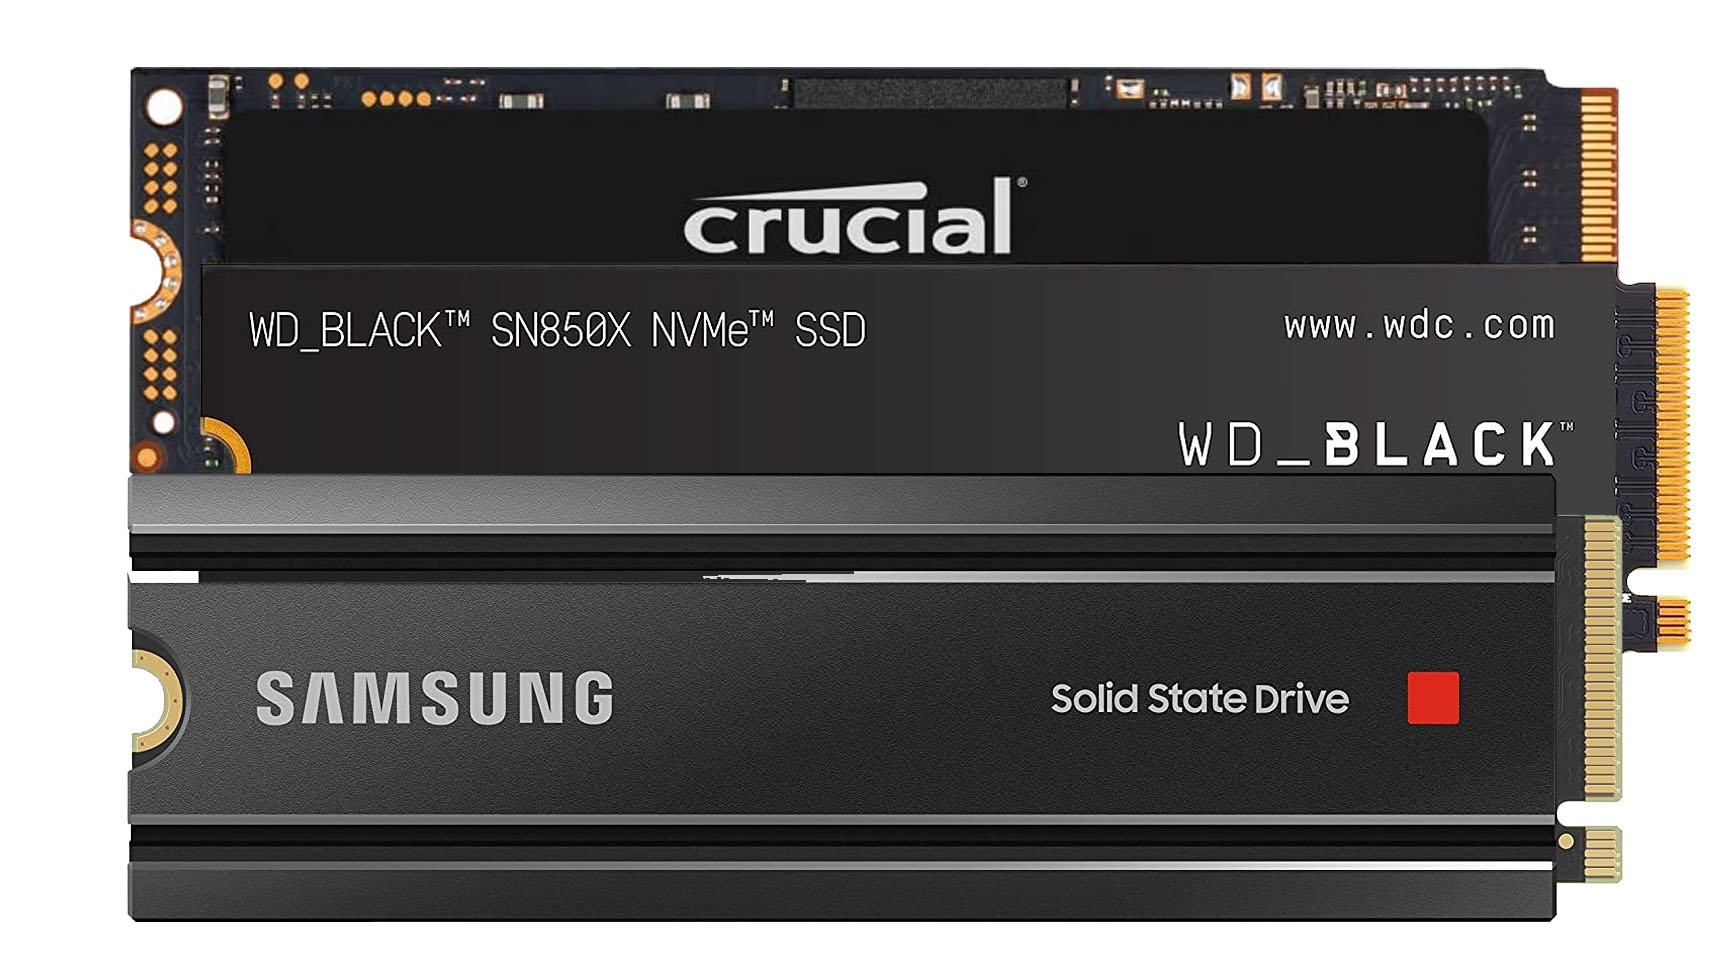 Tres SSD de 2 TB alcanzan nuevos precios bajos a partir de $ 99